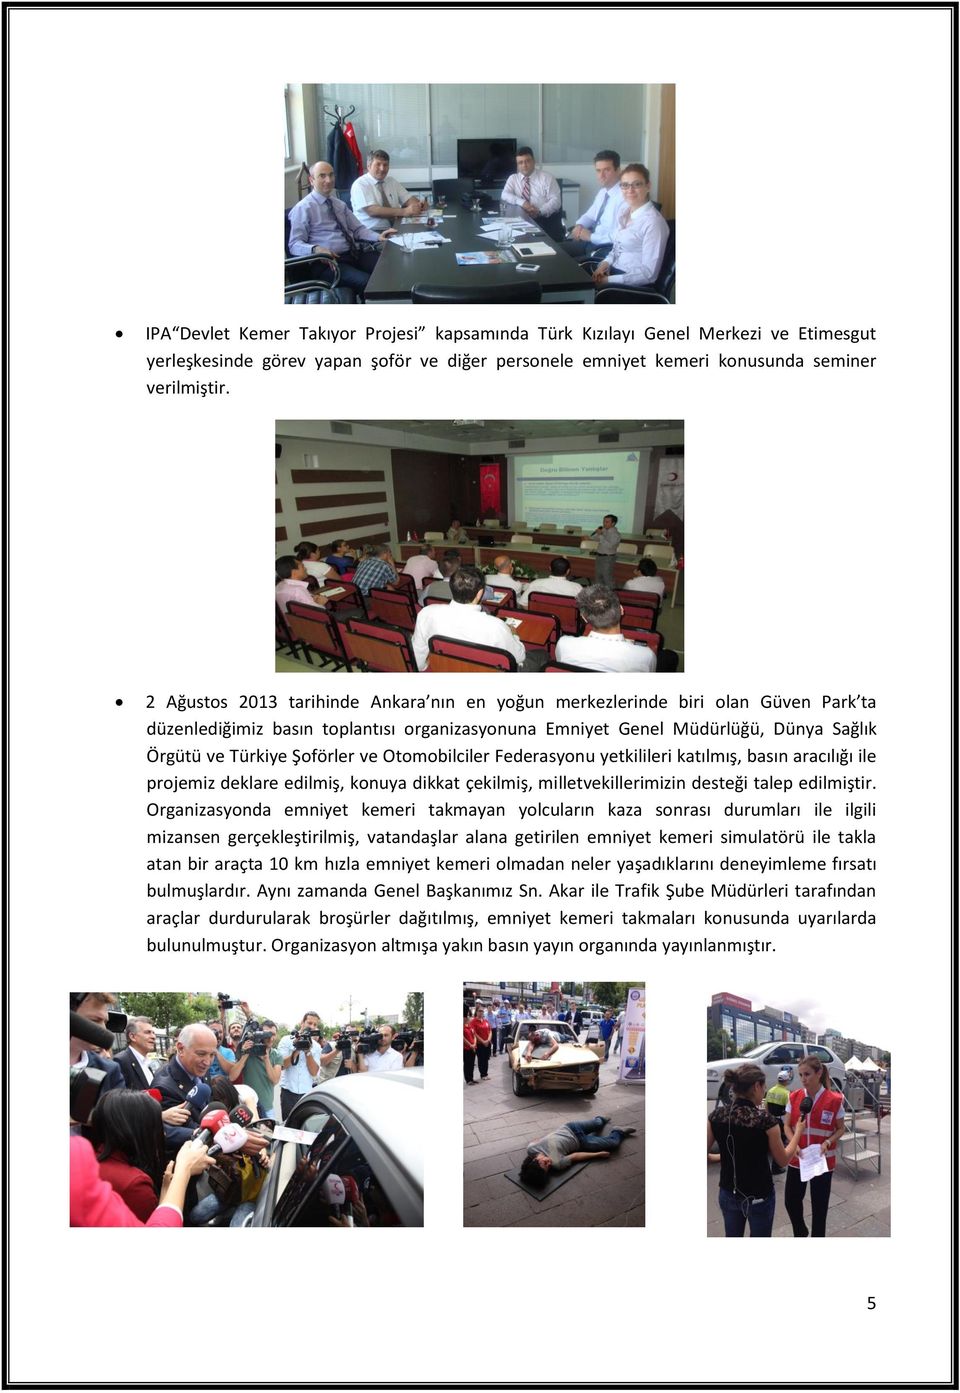 Otomobilciler Federasyonu yetkilileri katılmış, basın aracılığı ile projemiz deklare edilmiş, konuya dikkat çekilmiş, milletvekillerimizin desteği talep edilmiştir.